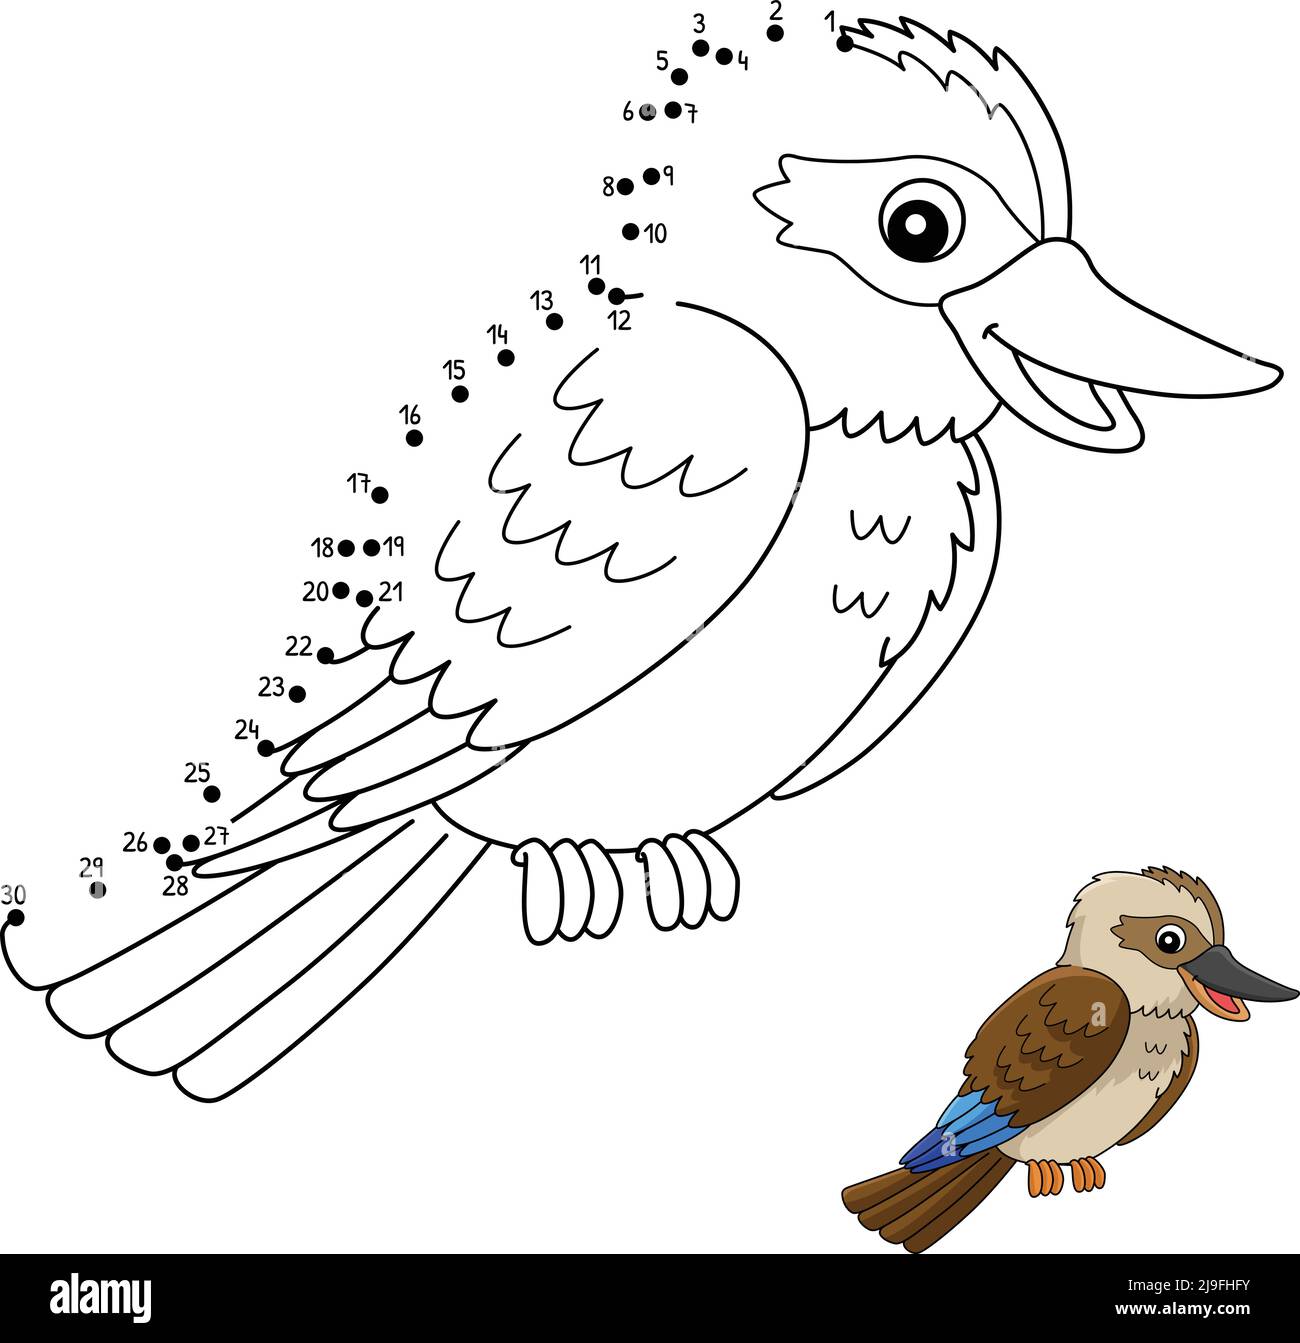 Dot to Dot Kookaburra Animal Coloring Page Stock Vector Image & Art - Alamy